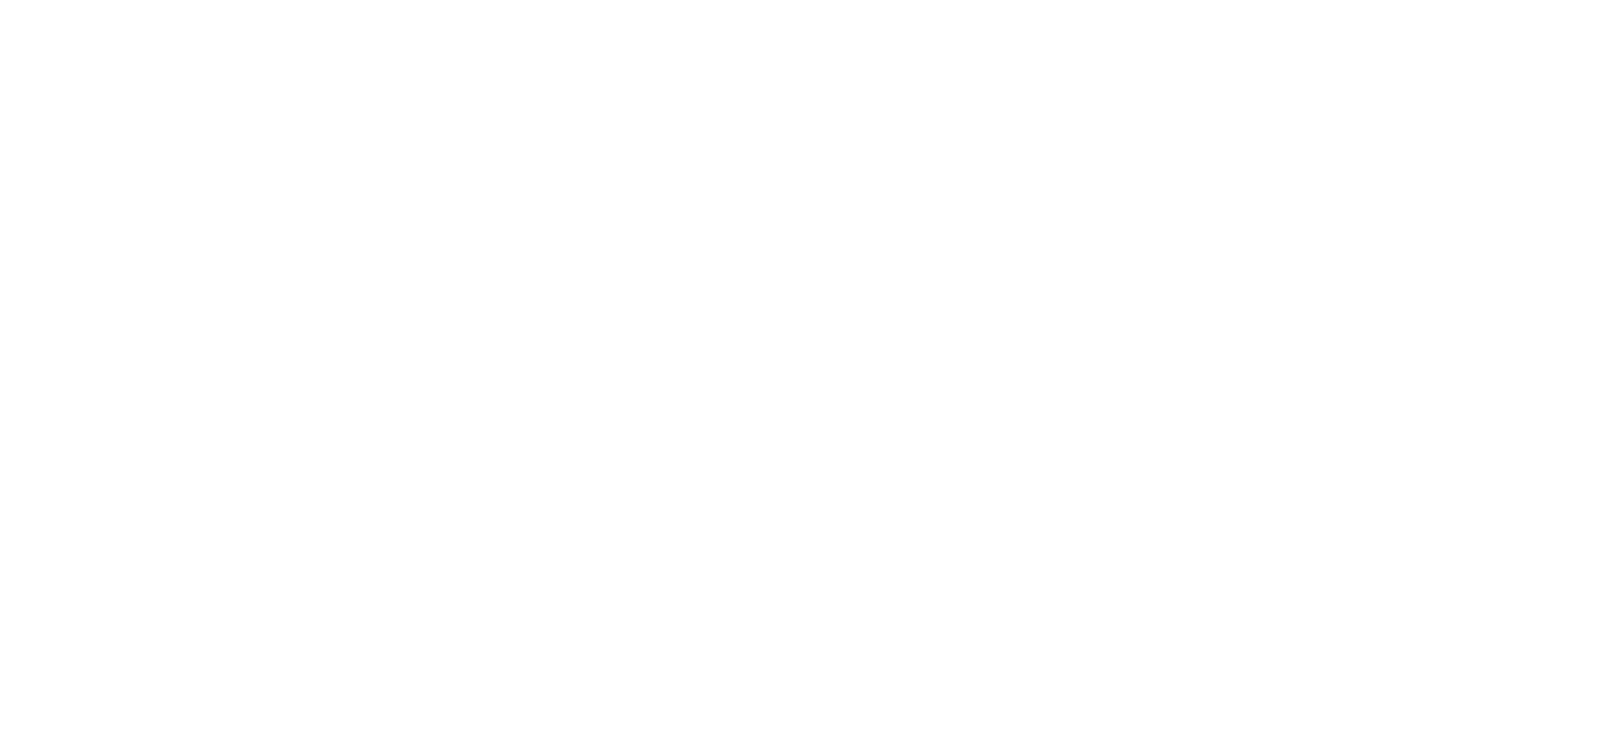 Теневой навес с уличными тренажерами и тренажеры с изменяемой нагрузкой. Выставочная экспозиция на Спартакиаде Дона 2019. Таганрог, июнь 2019